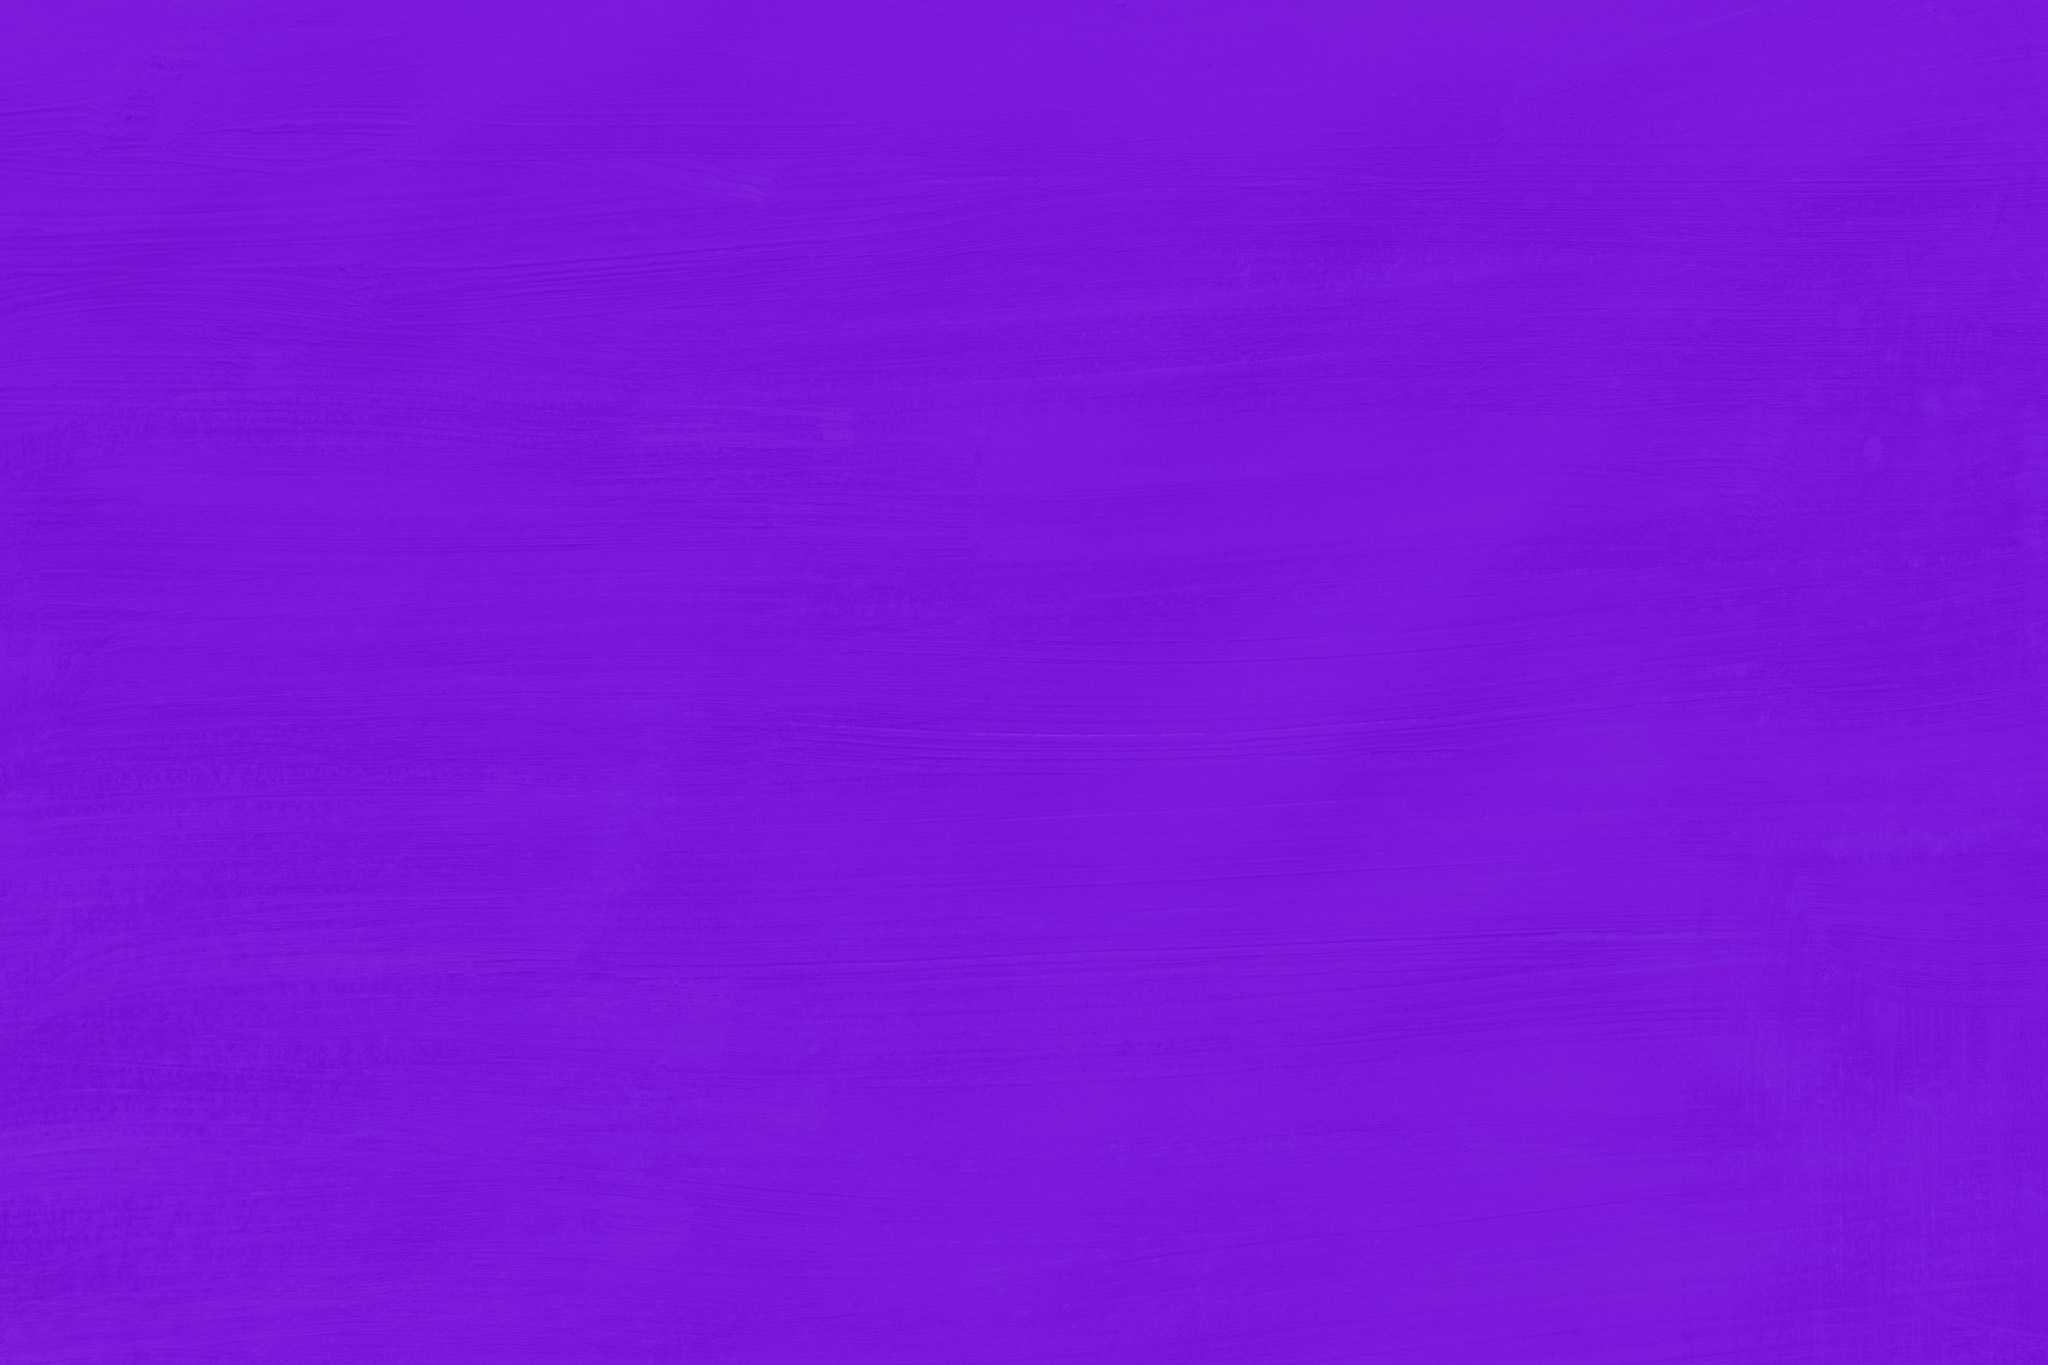 クールな紫色の無地の壁紙 の画像素材を無料ダウンロード 1 フリー素材 Beiz Images